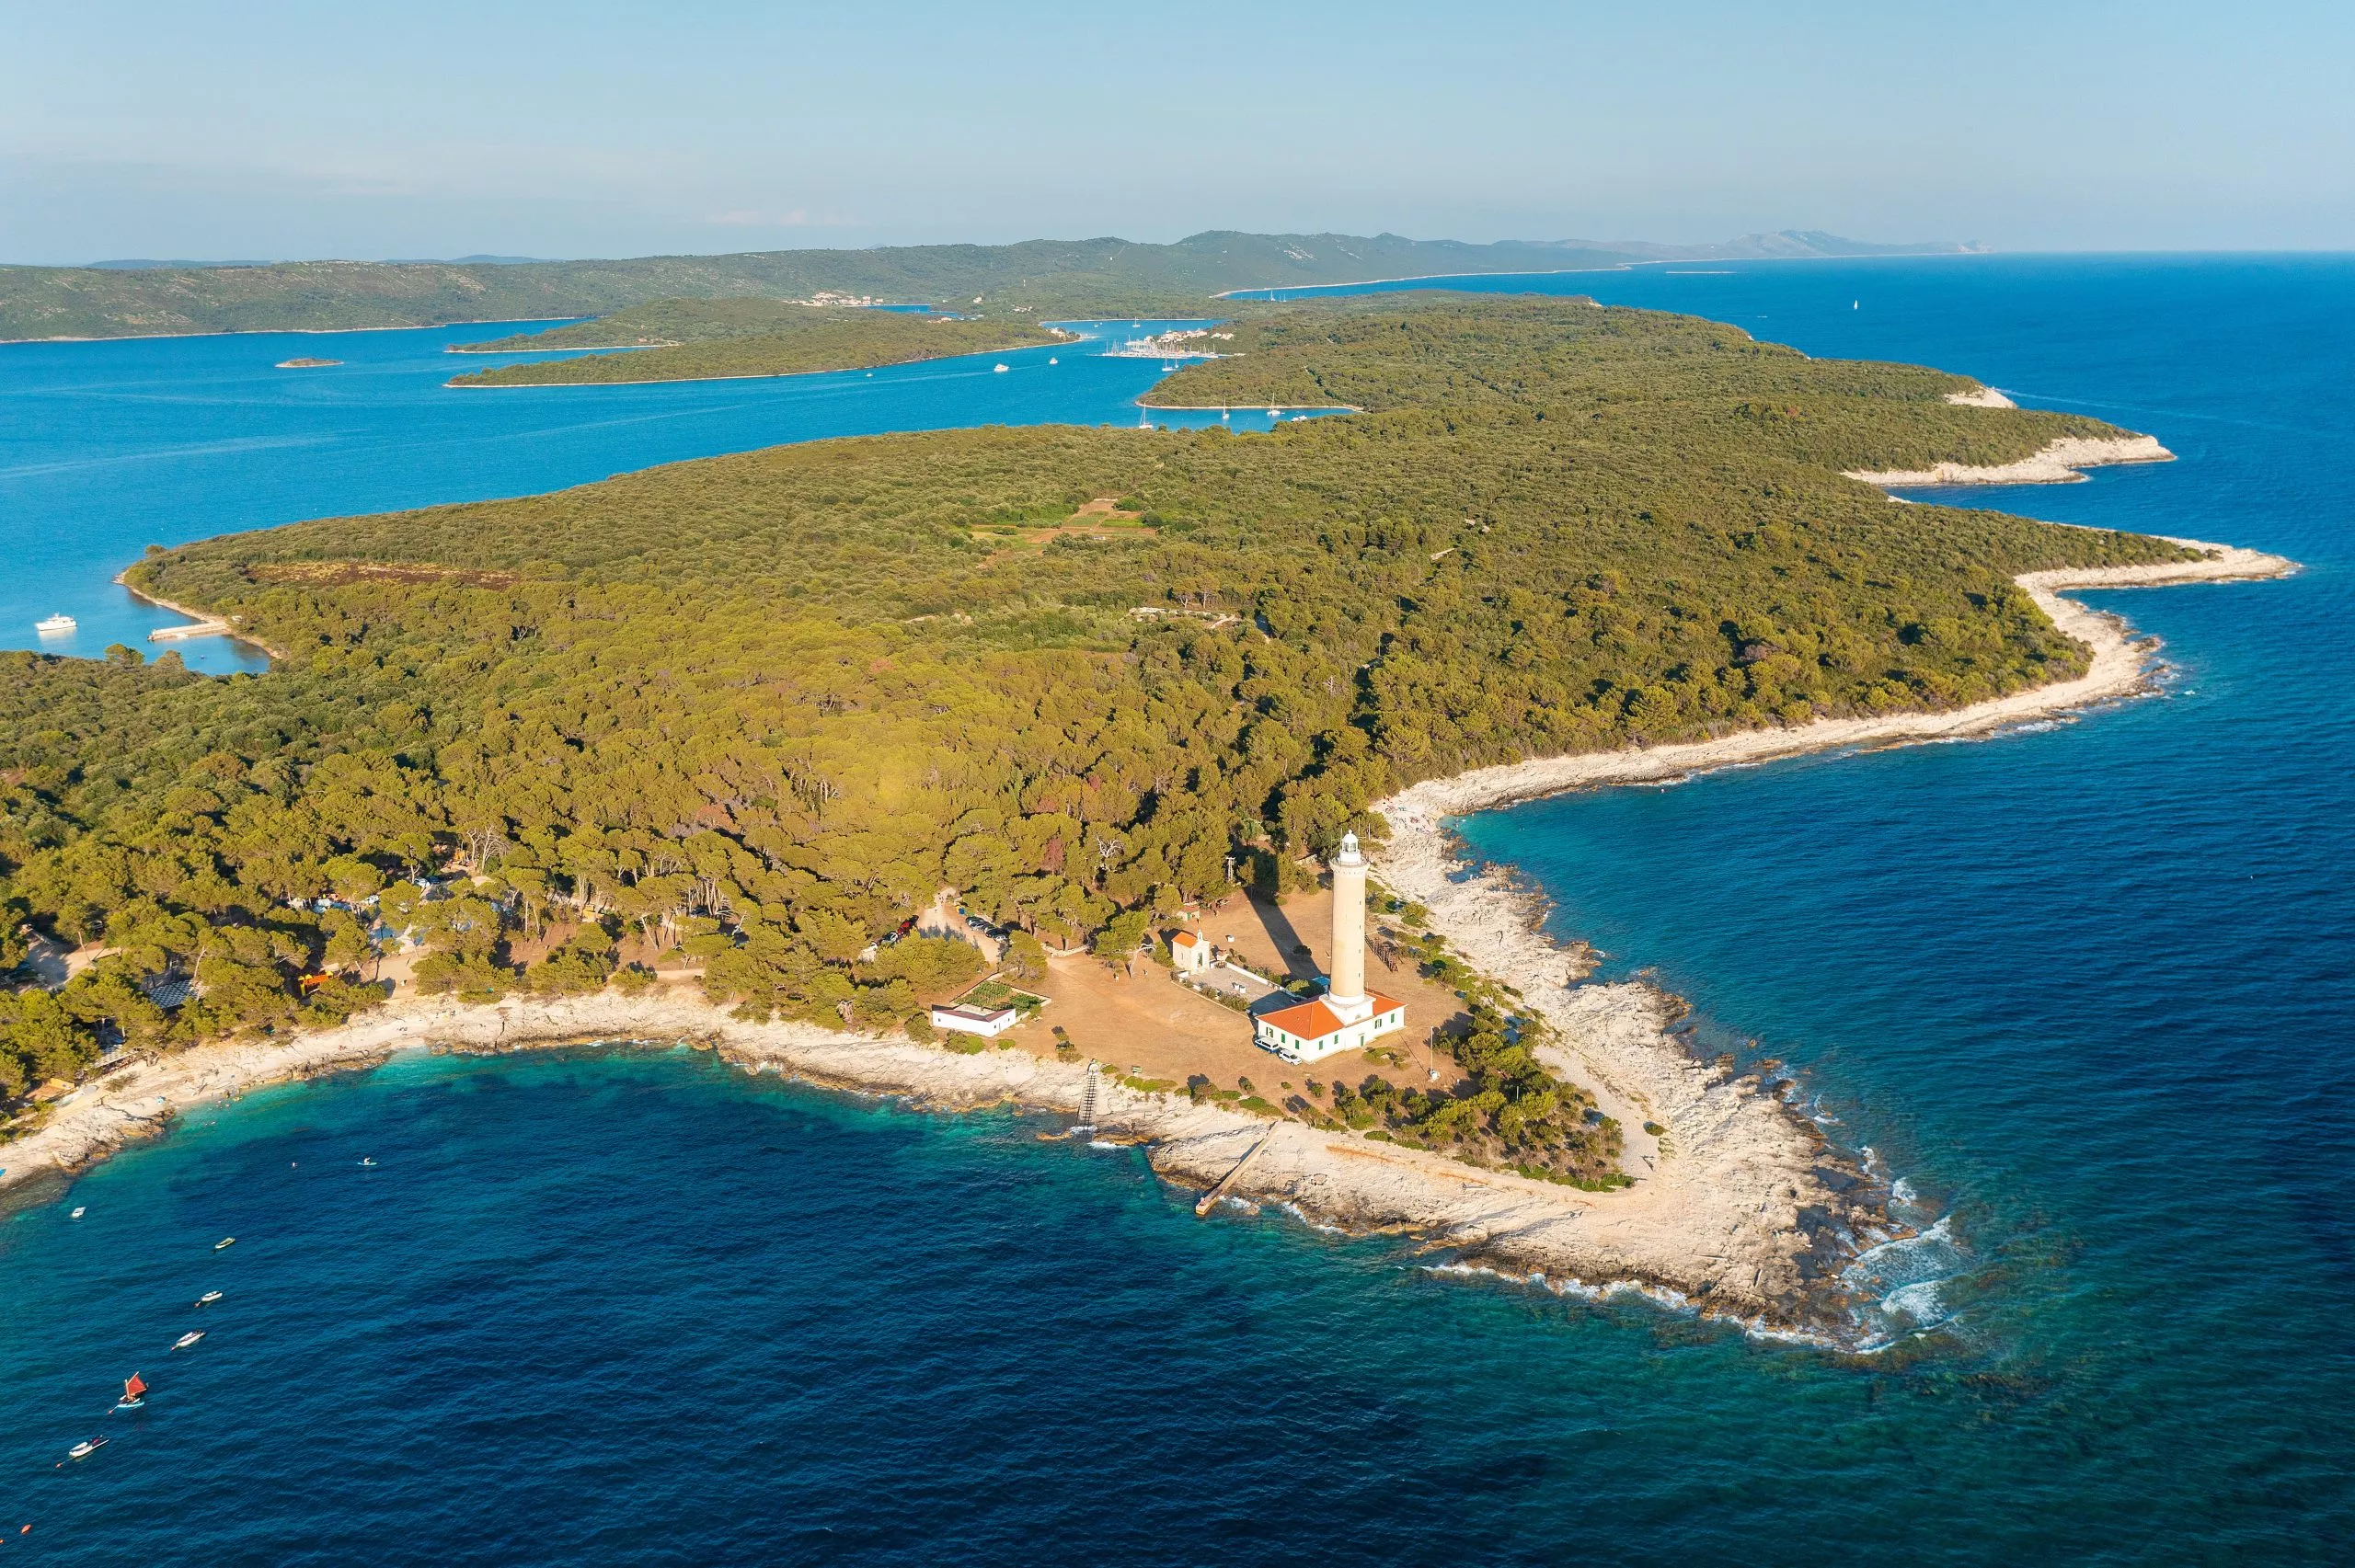 Luchtfoto van het lichtxhuis Veli Rat op het eiland Dugi Otok, in de Adriatische Zee in Kroatië